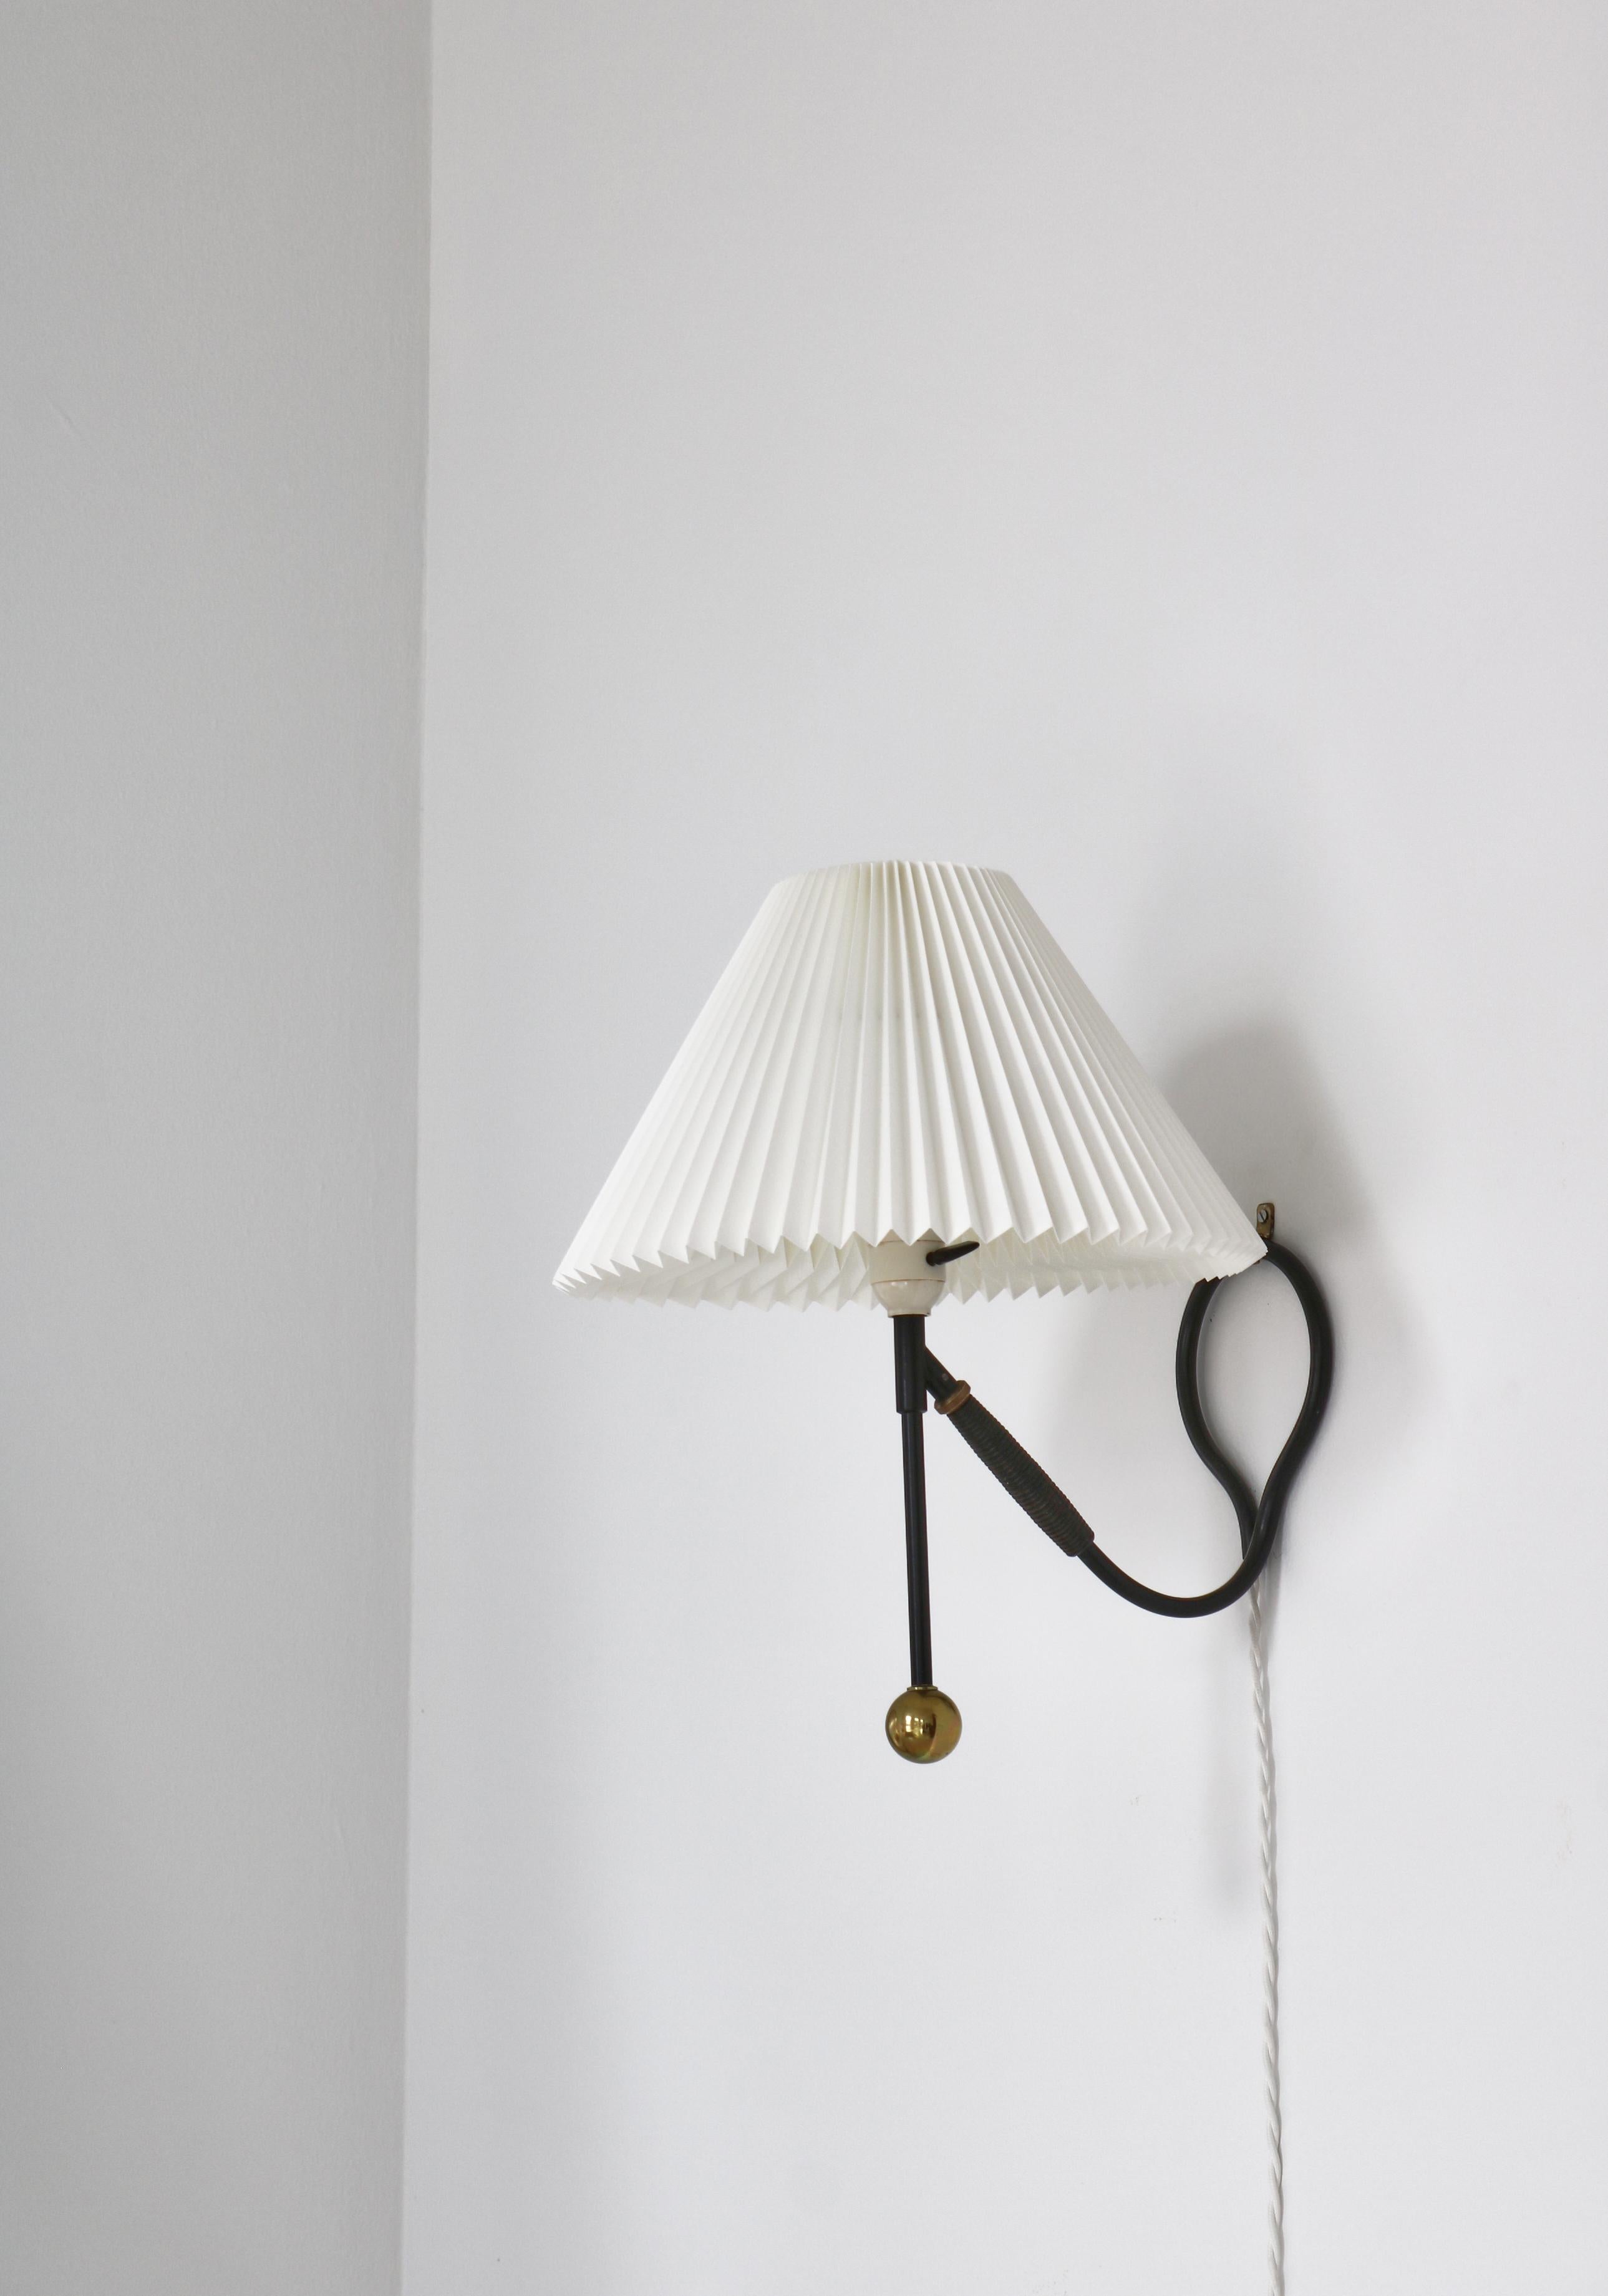 Le Klint Brass Wall or Table Lamp by Kaare Klint 